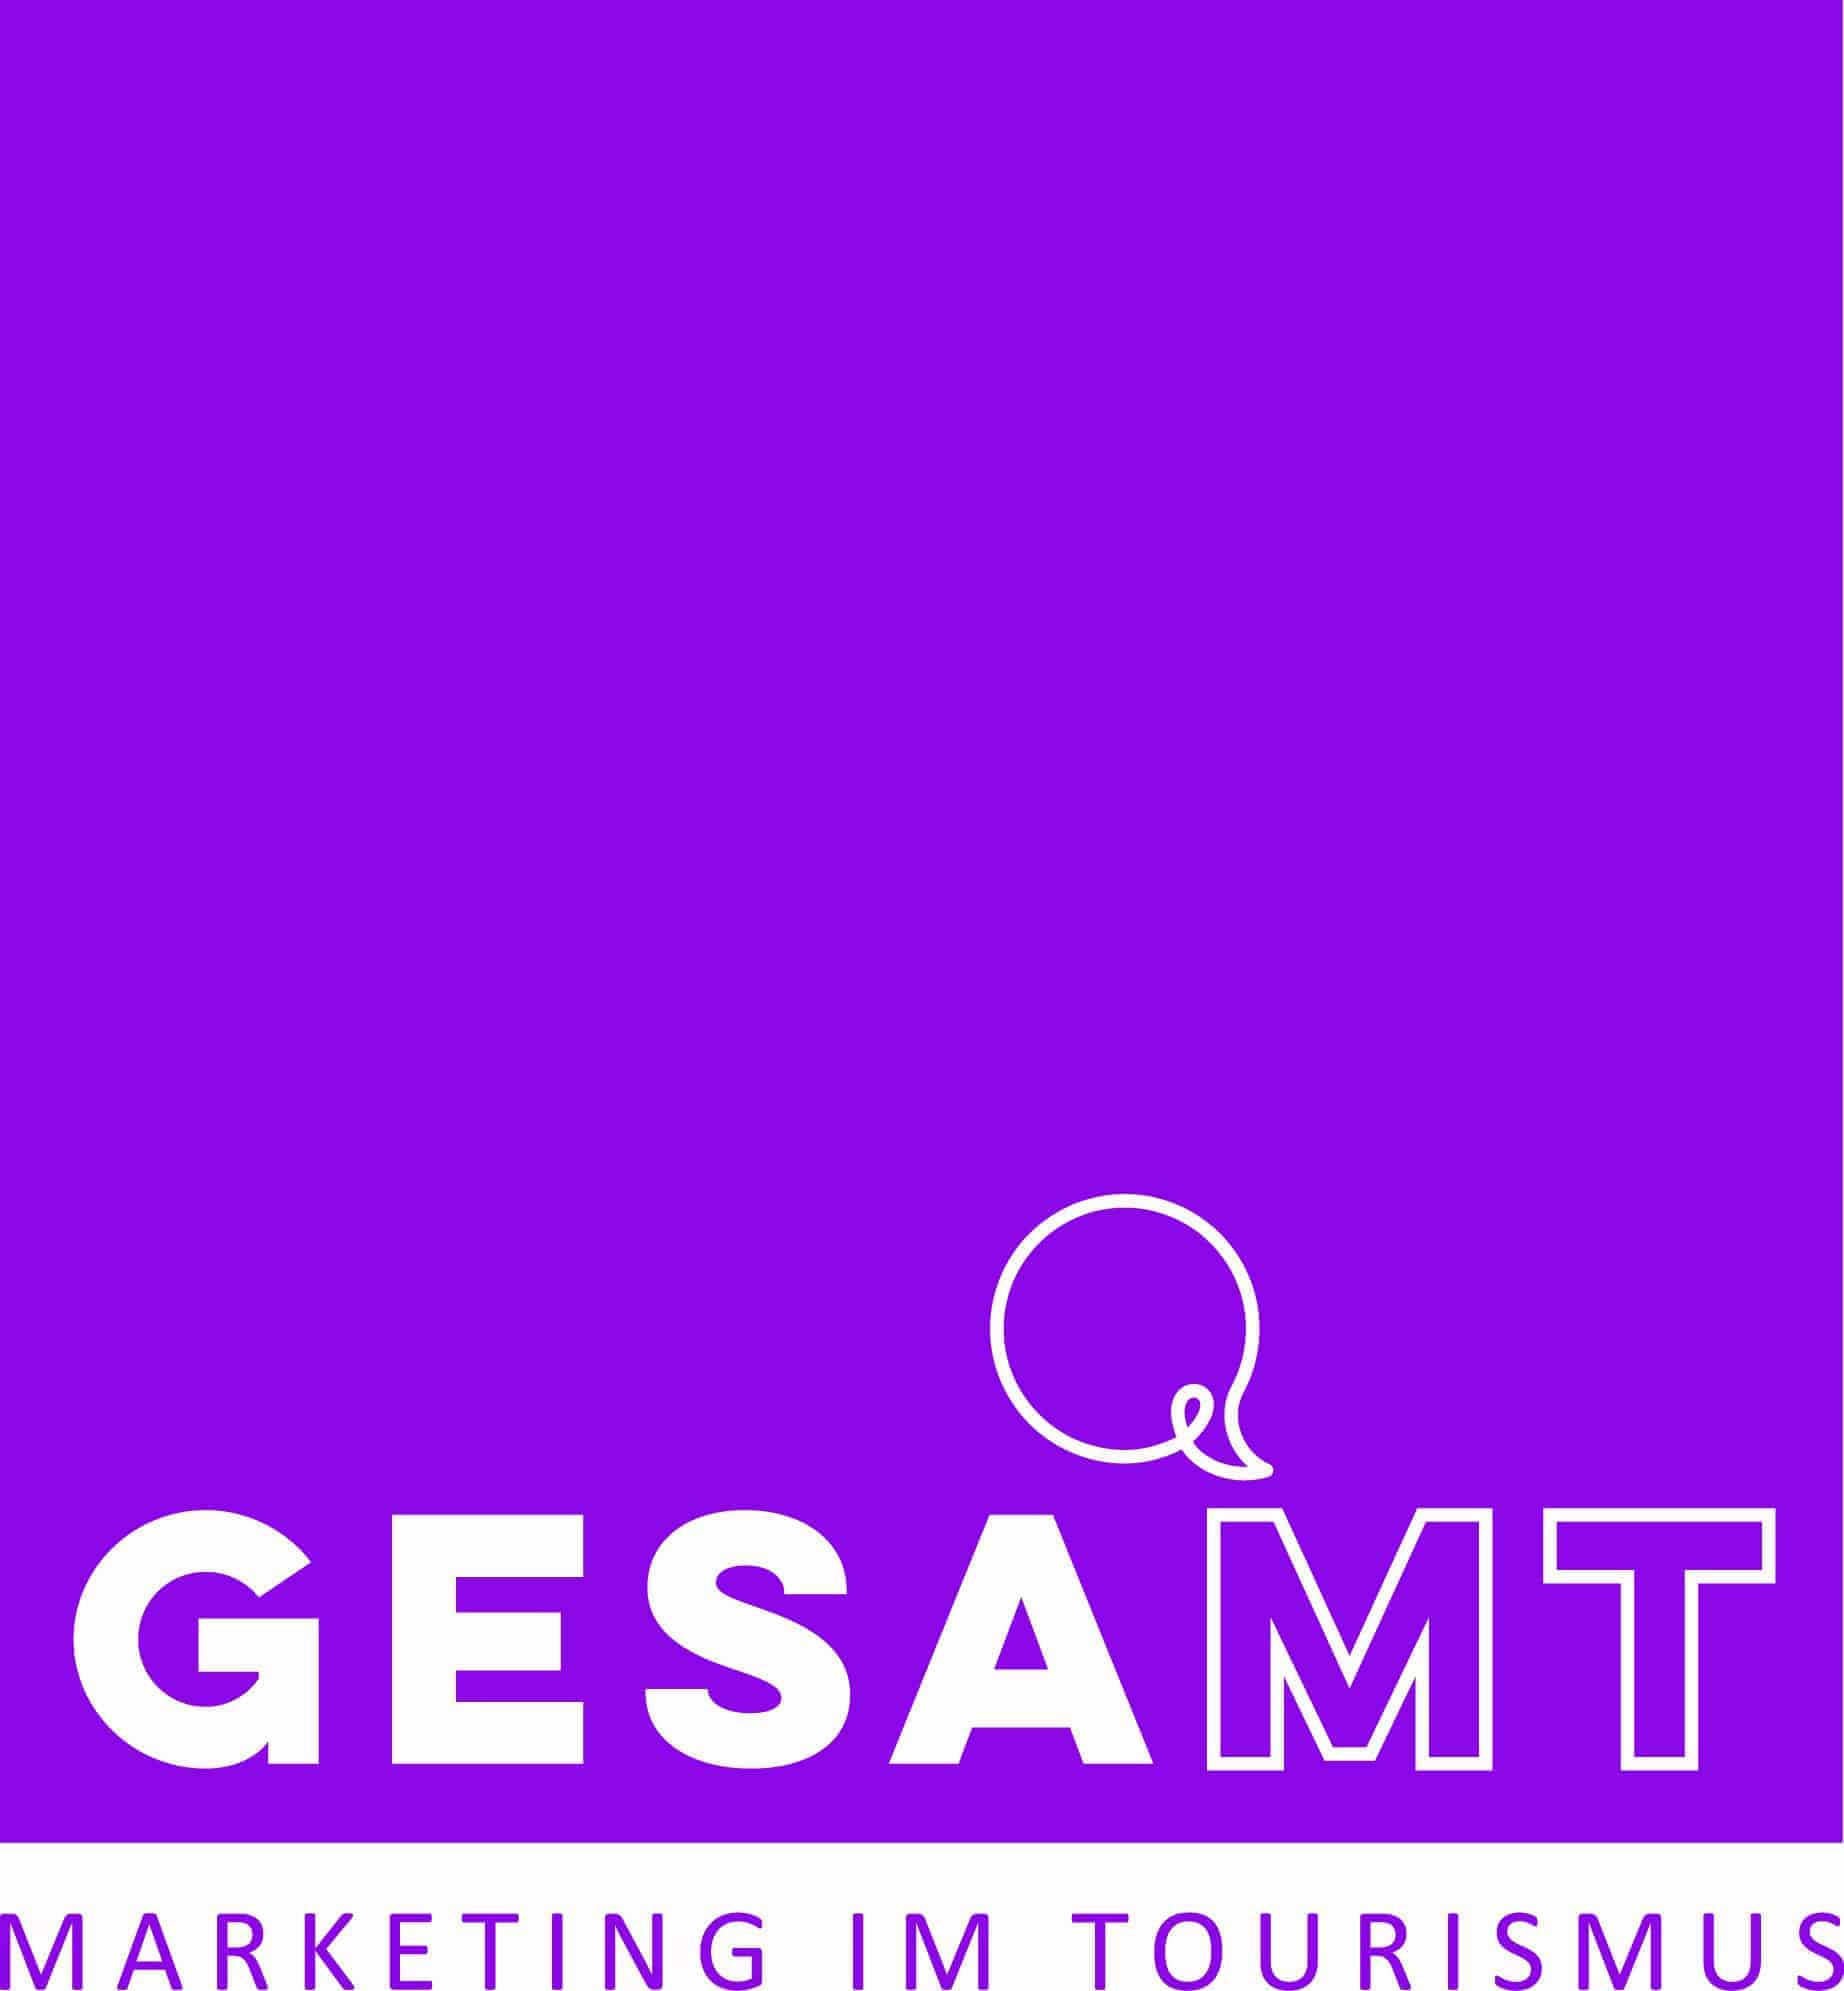 Gesa.mt tourismusmarketing gmbh